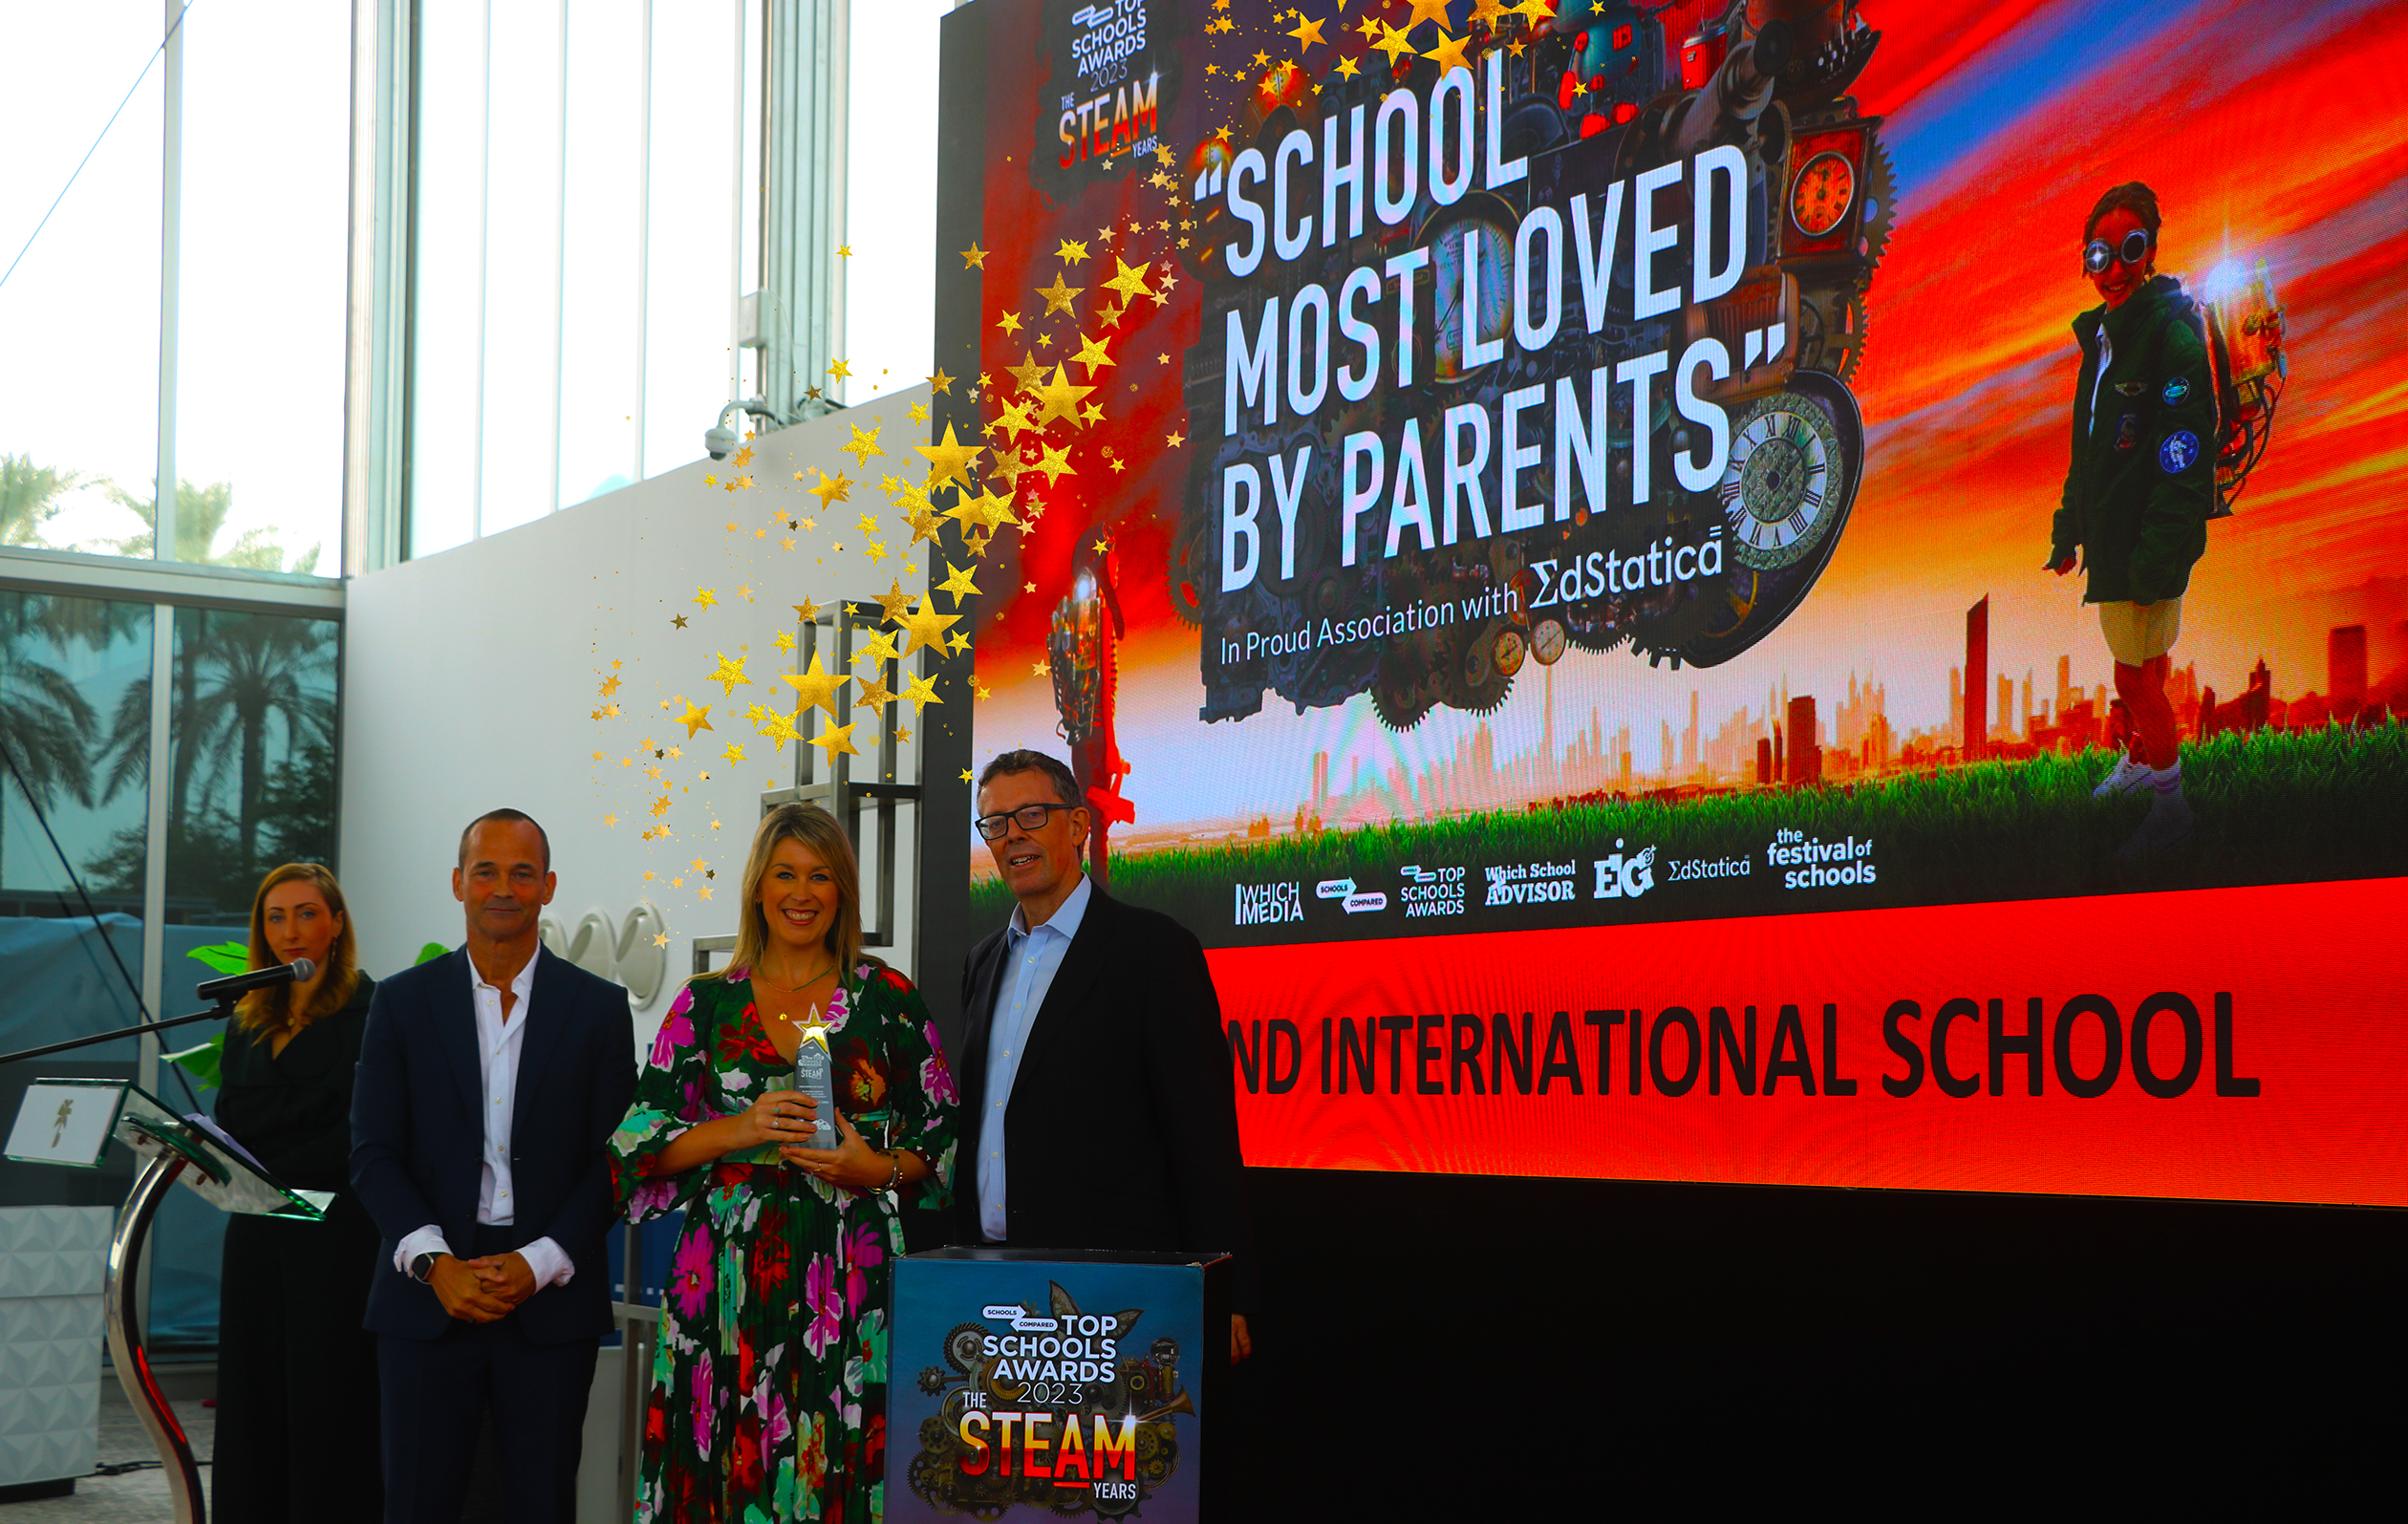 Die Hartland International School in Dubai wurde in Zusammenarbeit mit EDSTATICA mit dem Top Schools Award für die von Eltern am meisten geliebte Schule ausgezeichnet.